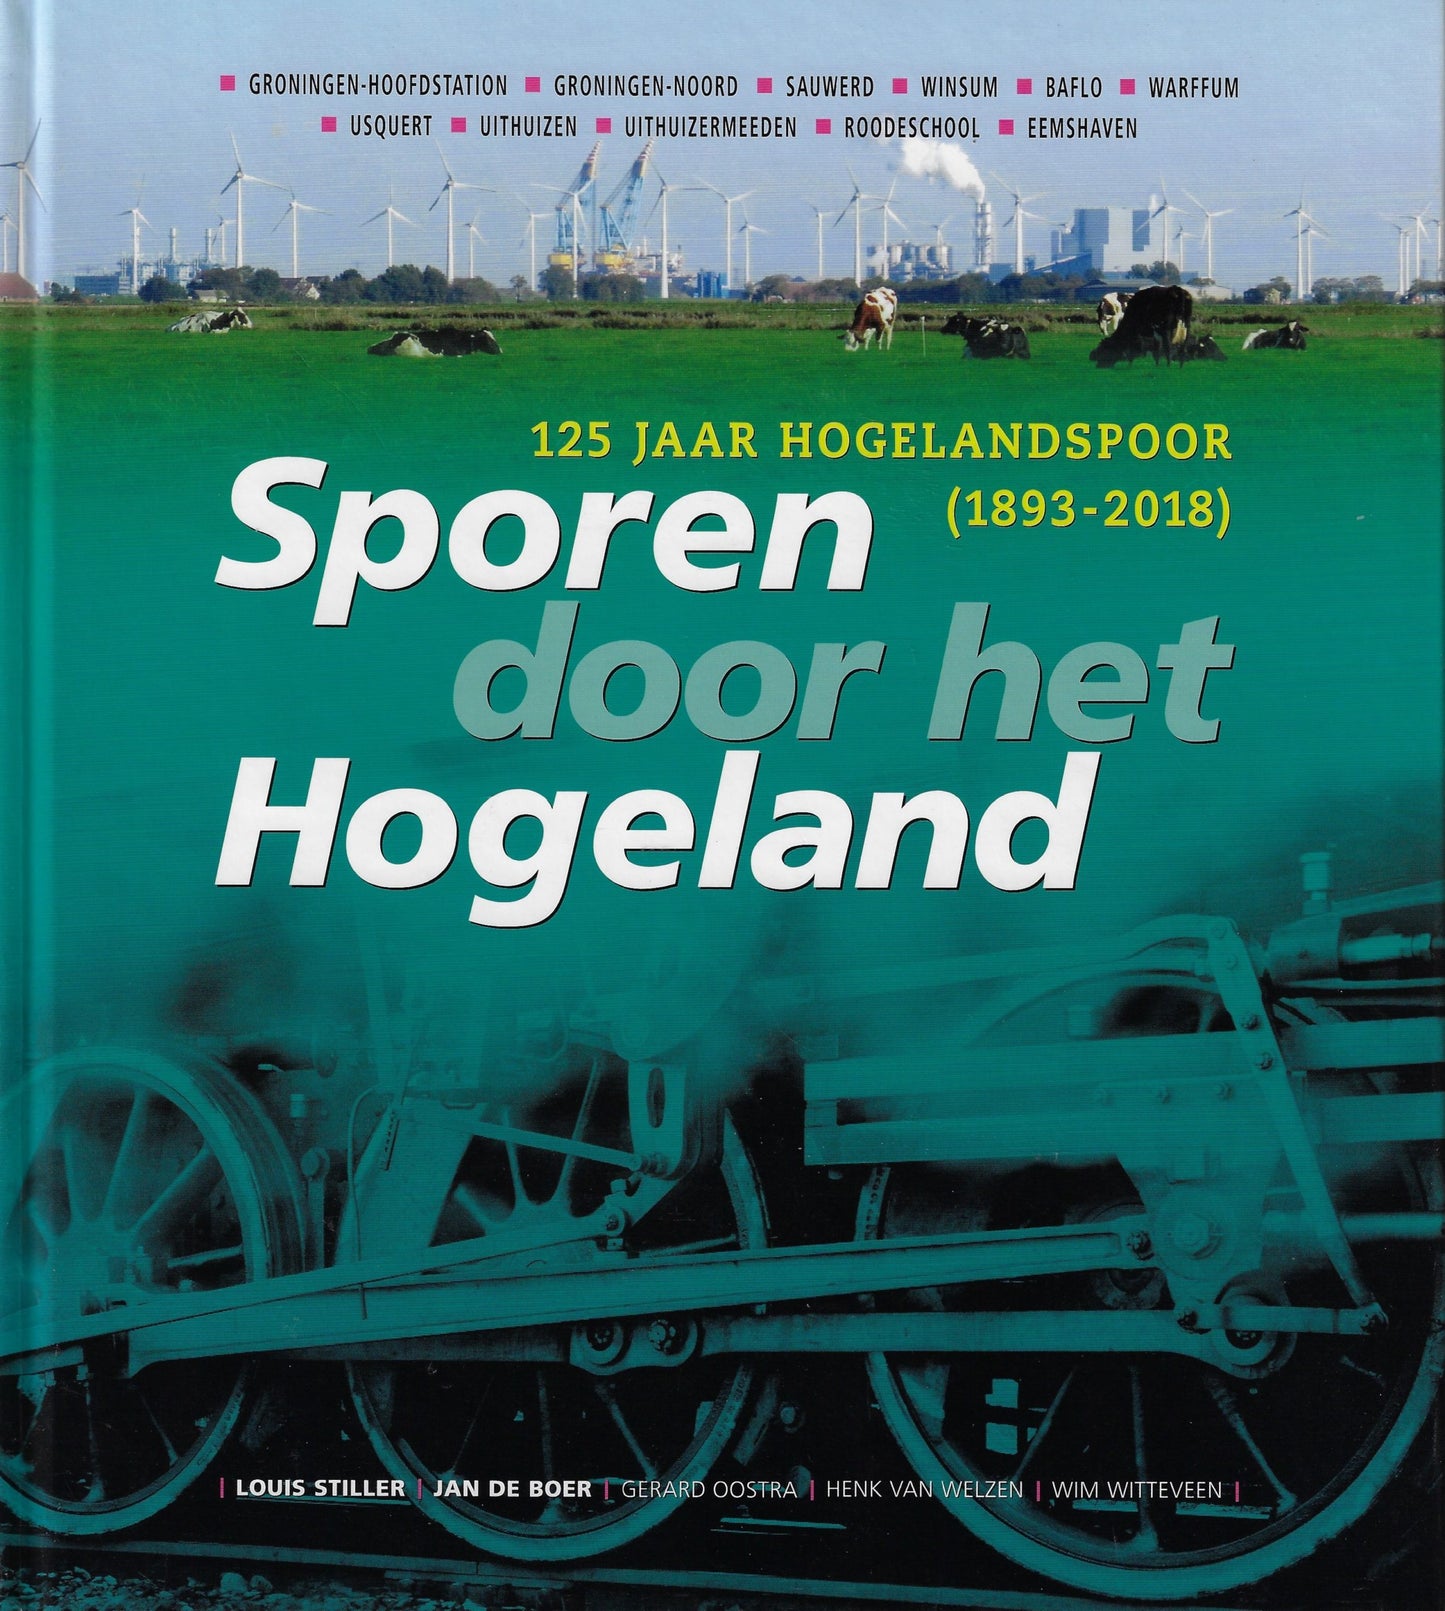 Sporen door het Hogeland, 125 jaar Hogelandspoor (1893-2018)